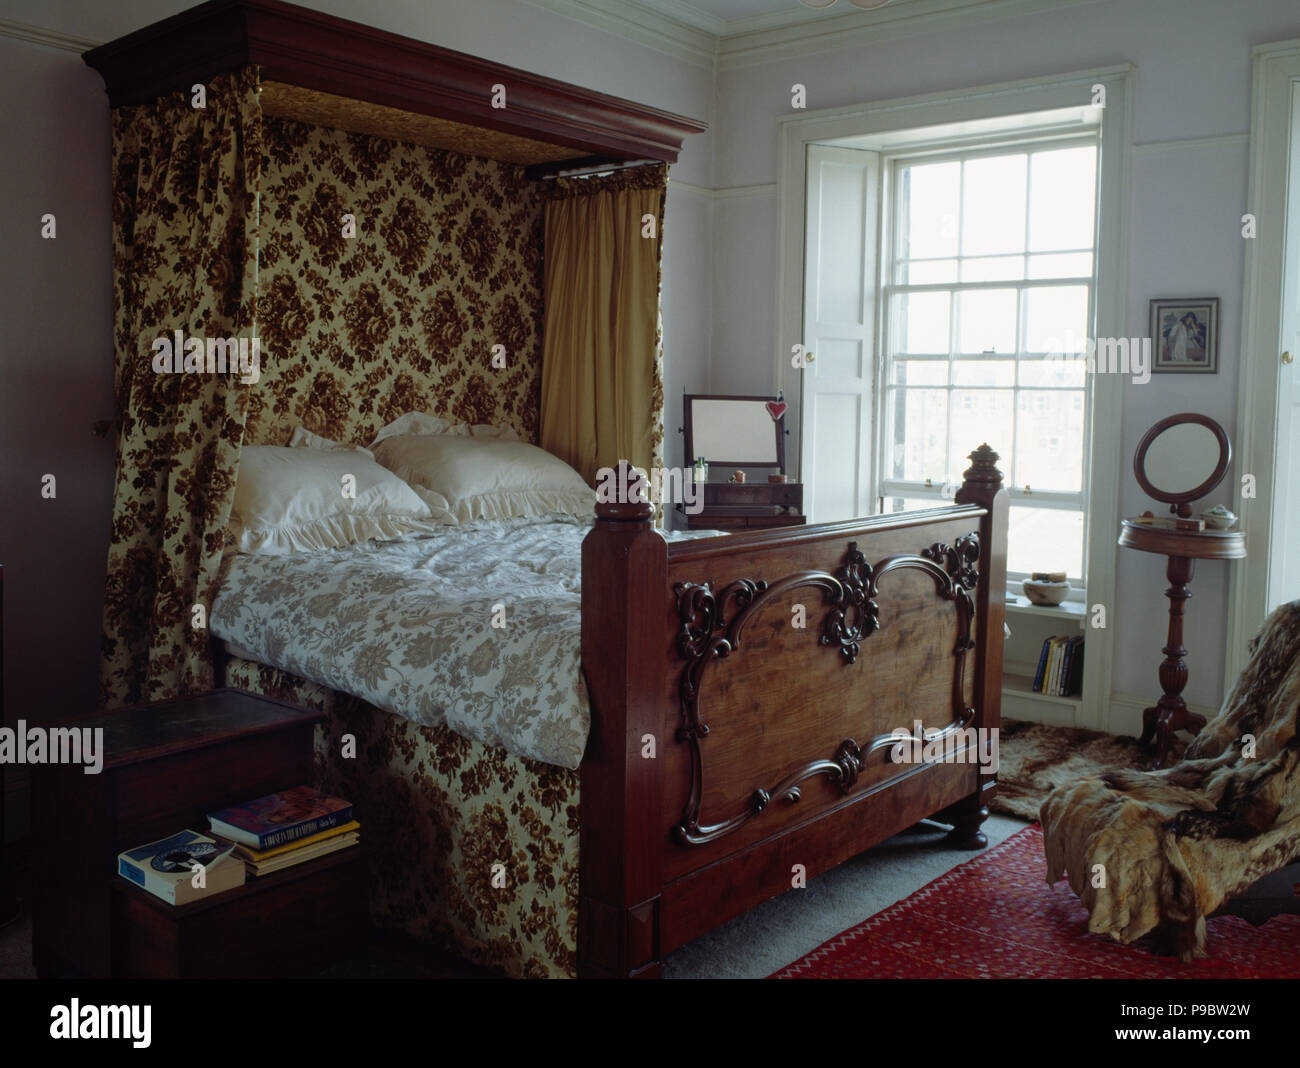 Scolpiti in legno antico semi-baldacchino con motivi curtainson baldacchino in stile vittoriano camera da letto Foto Stock